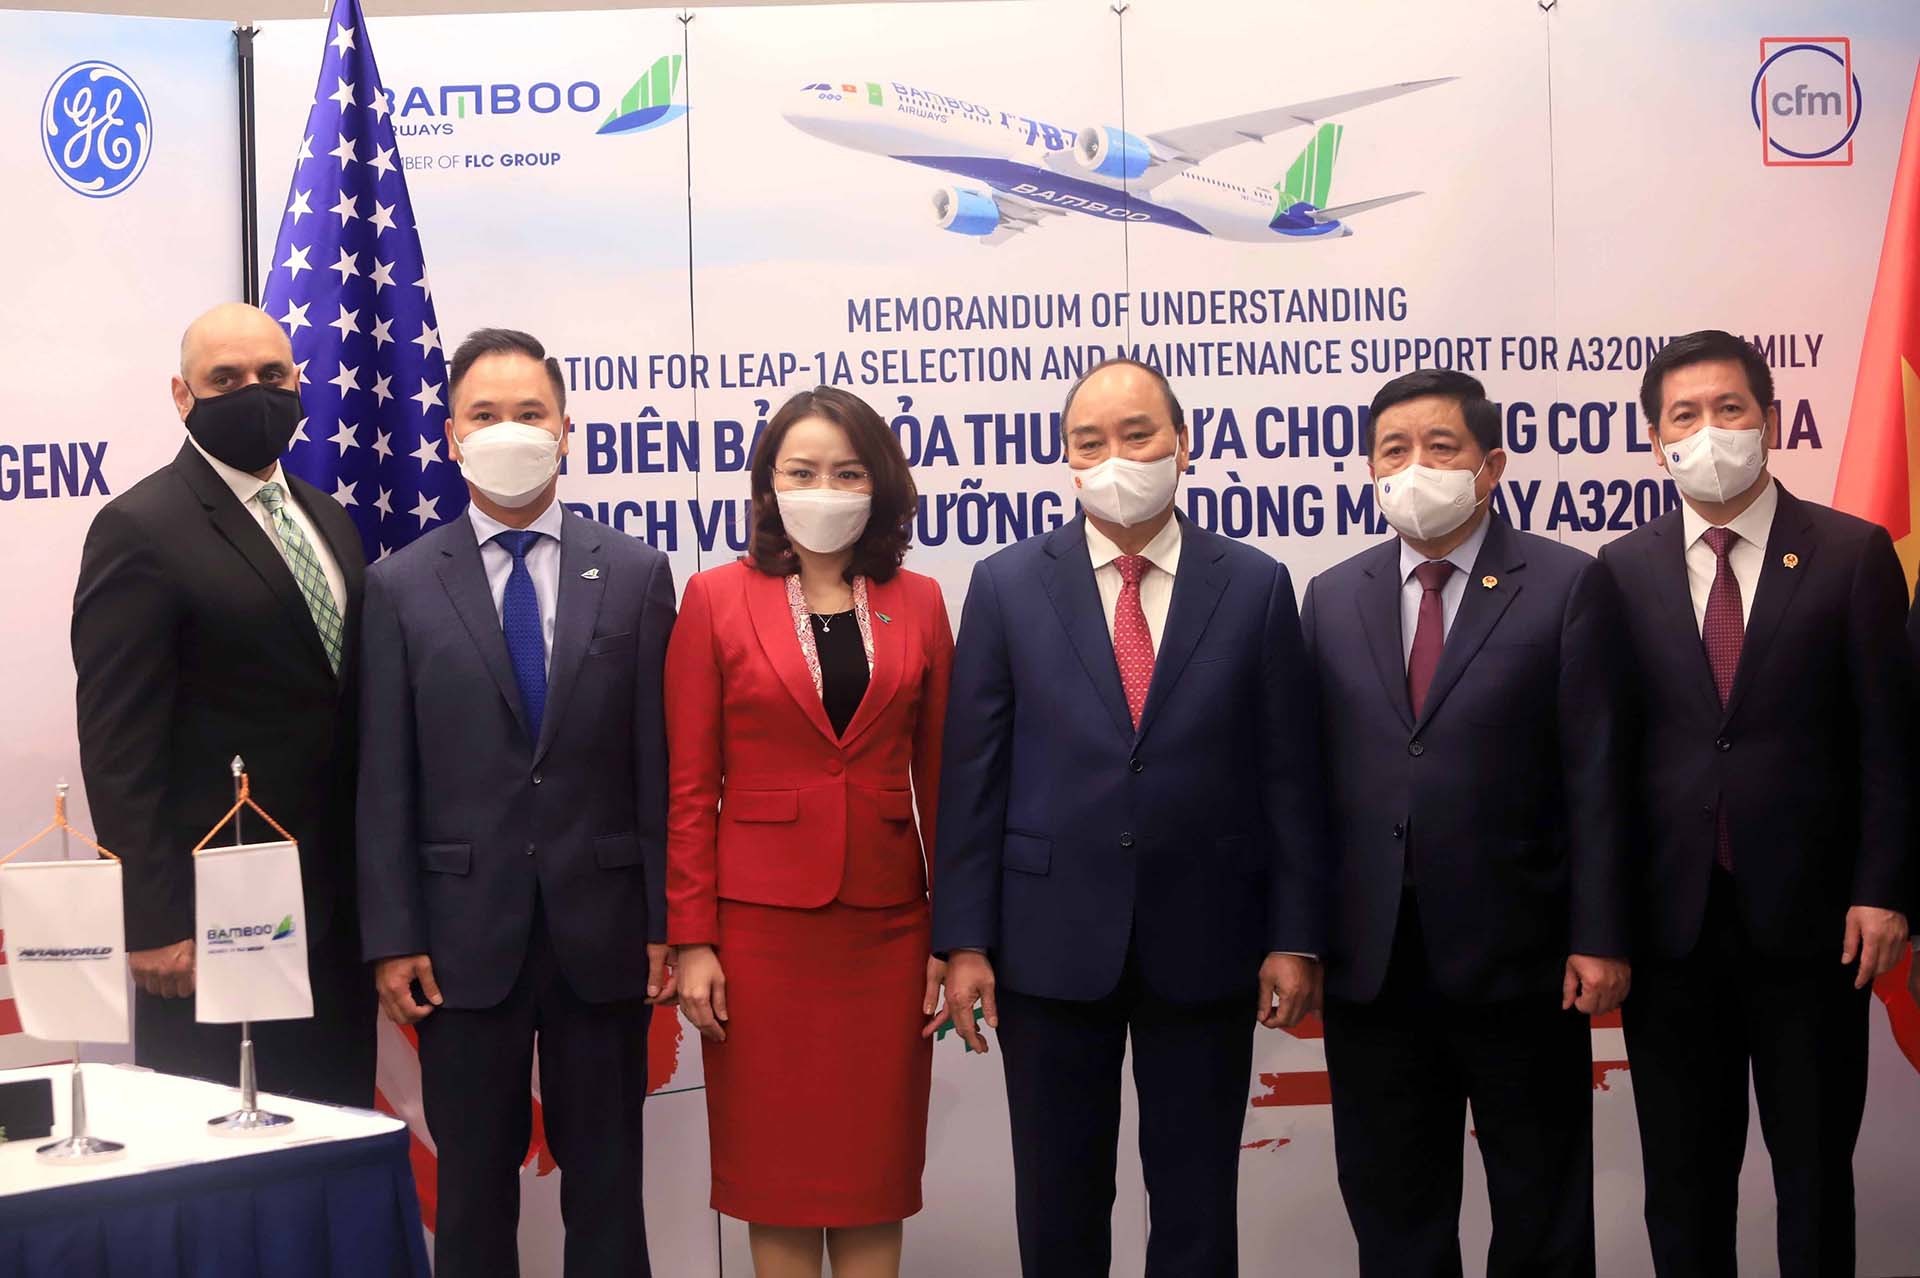 Chủ tịch nước Nguyễn Xuân Phúc chứng kiến Lễ ký văn kiện hợp tác giữa Bamboo Airways và các đối tác GE, CFM International, AviaWorld LCC. (Nguồn: TTXVN)